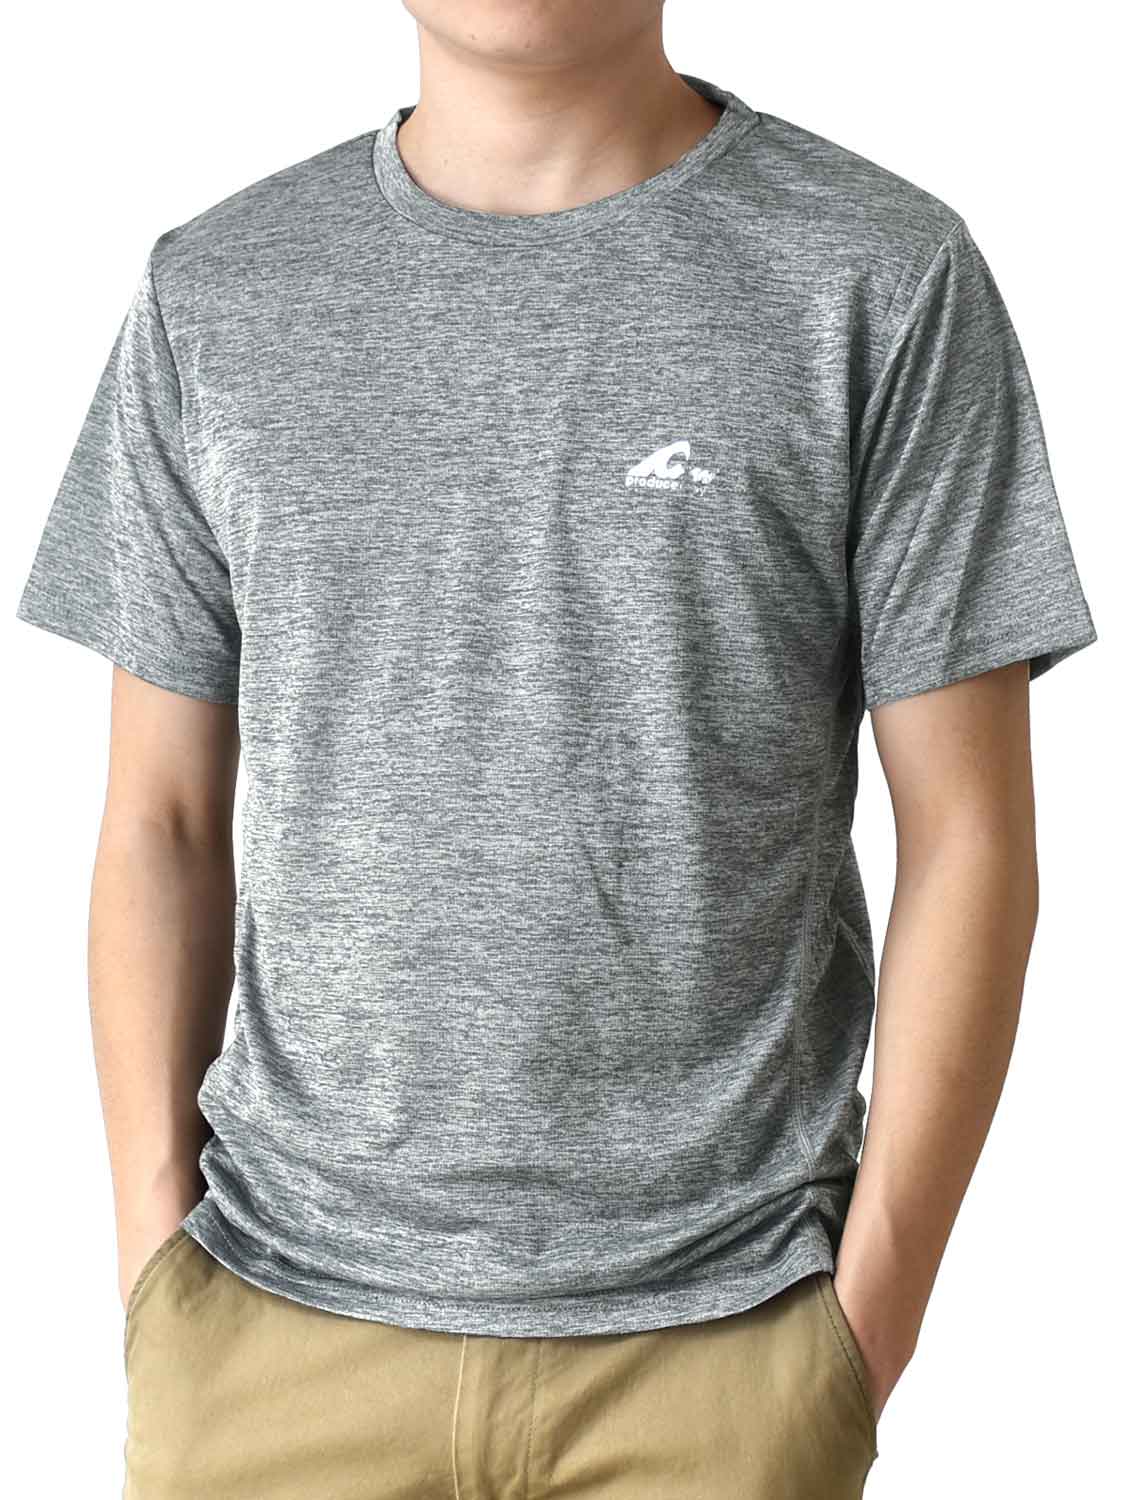 Tシャツ メンズ DRYストレッチ 吸汗速乾 リフレクションプリント 送料無料 通販Y 半袖